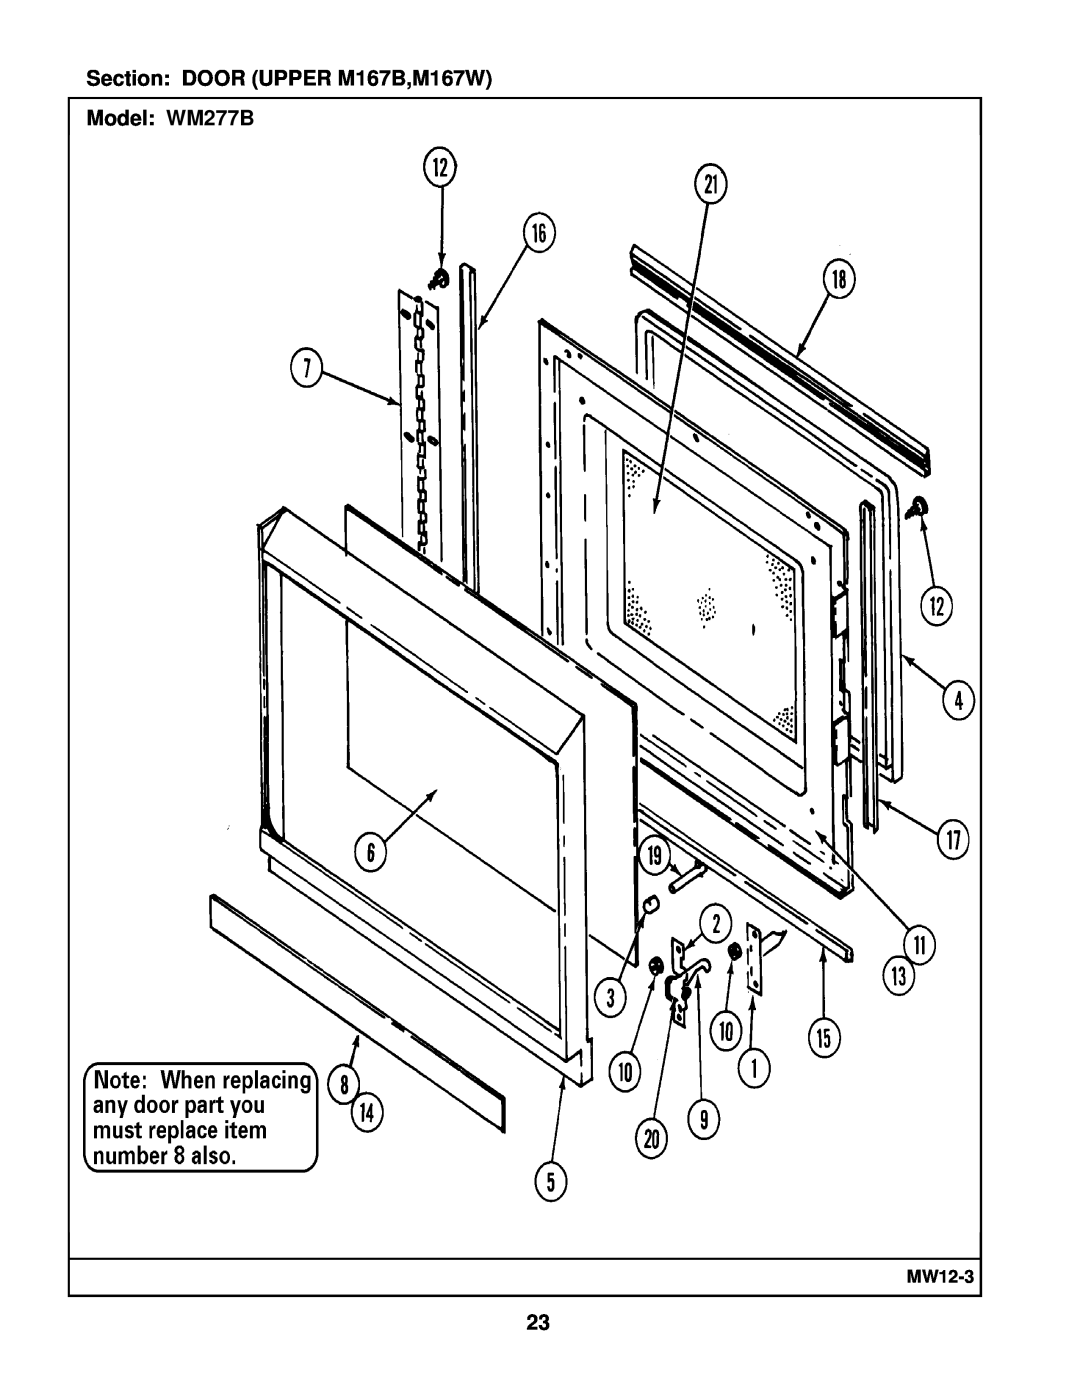 Maytag manual Section DOOR UPPER M167B,M167W Model WM277B, MW12-3 